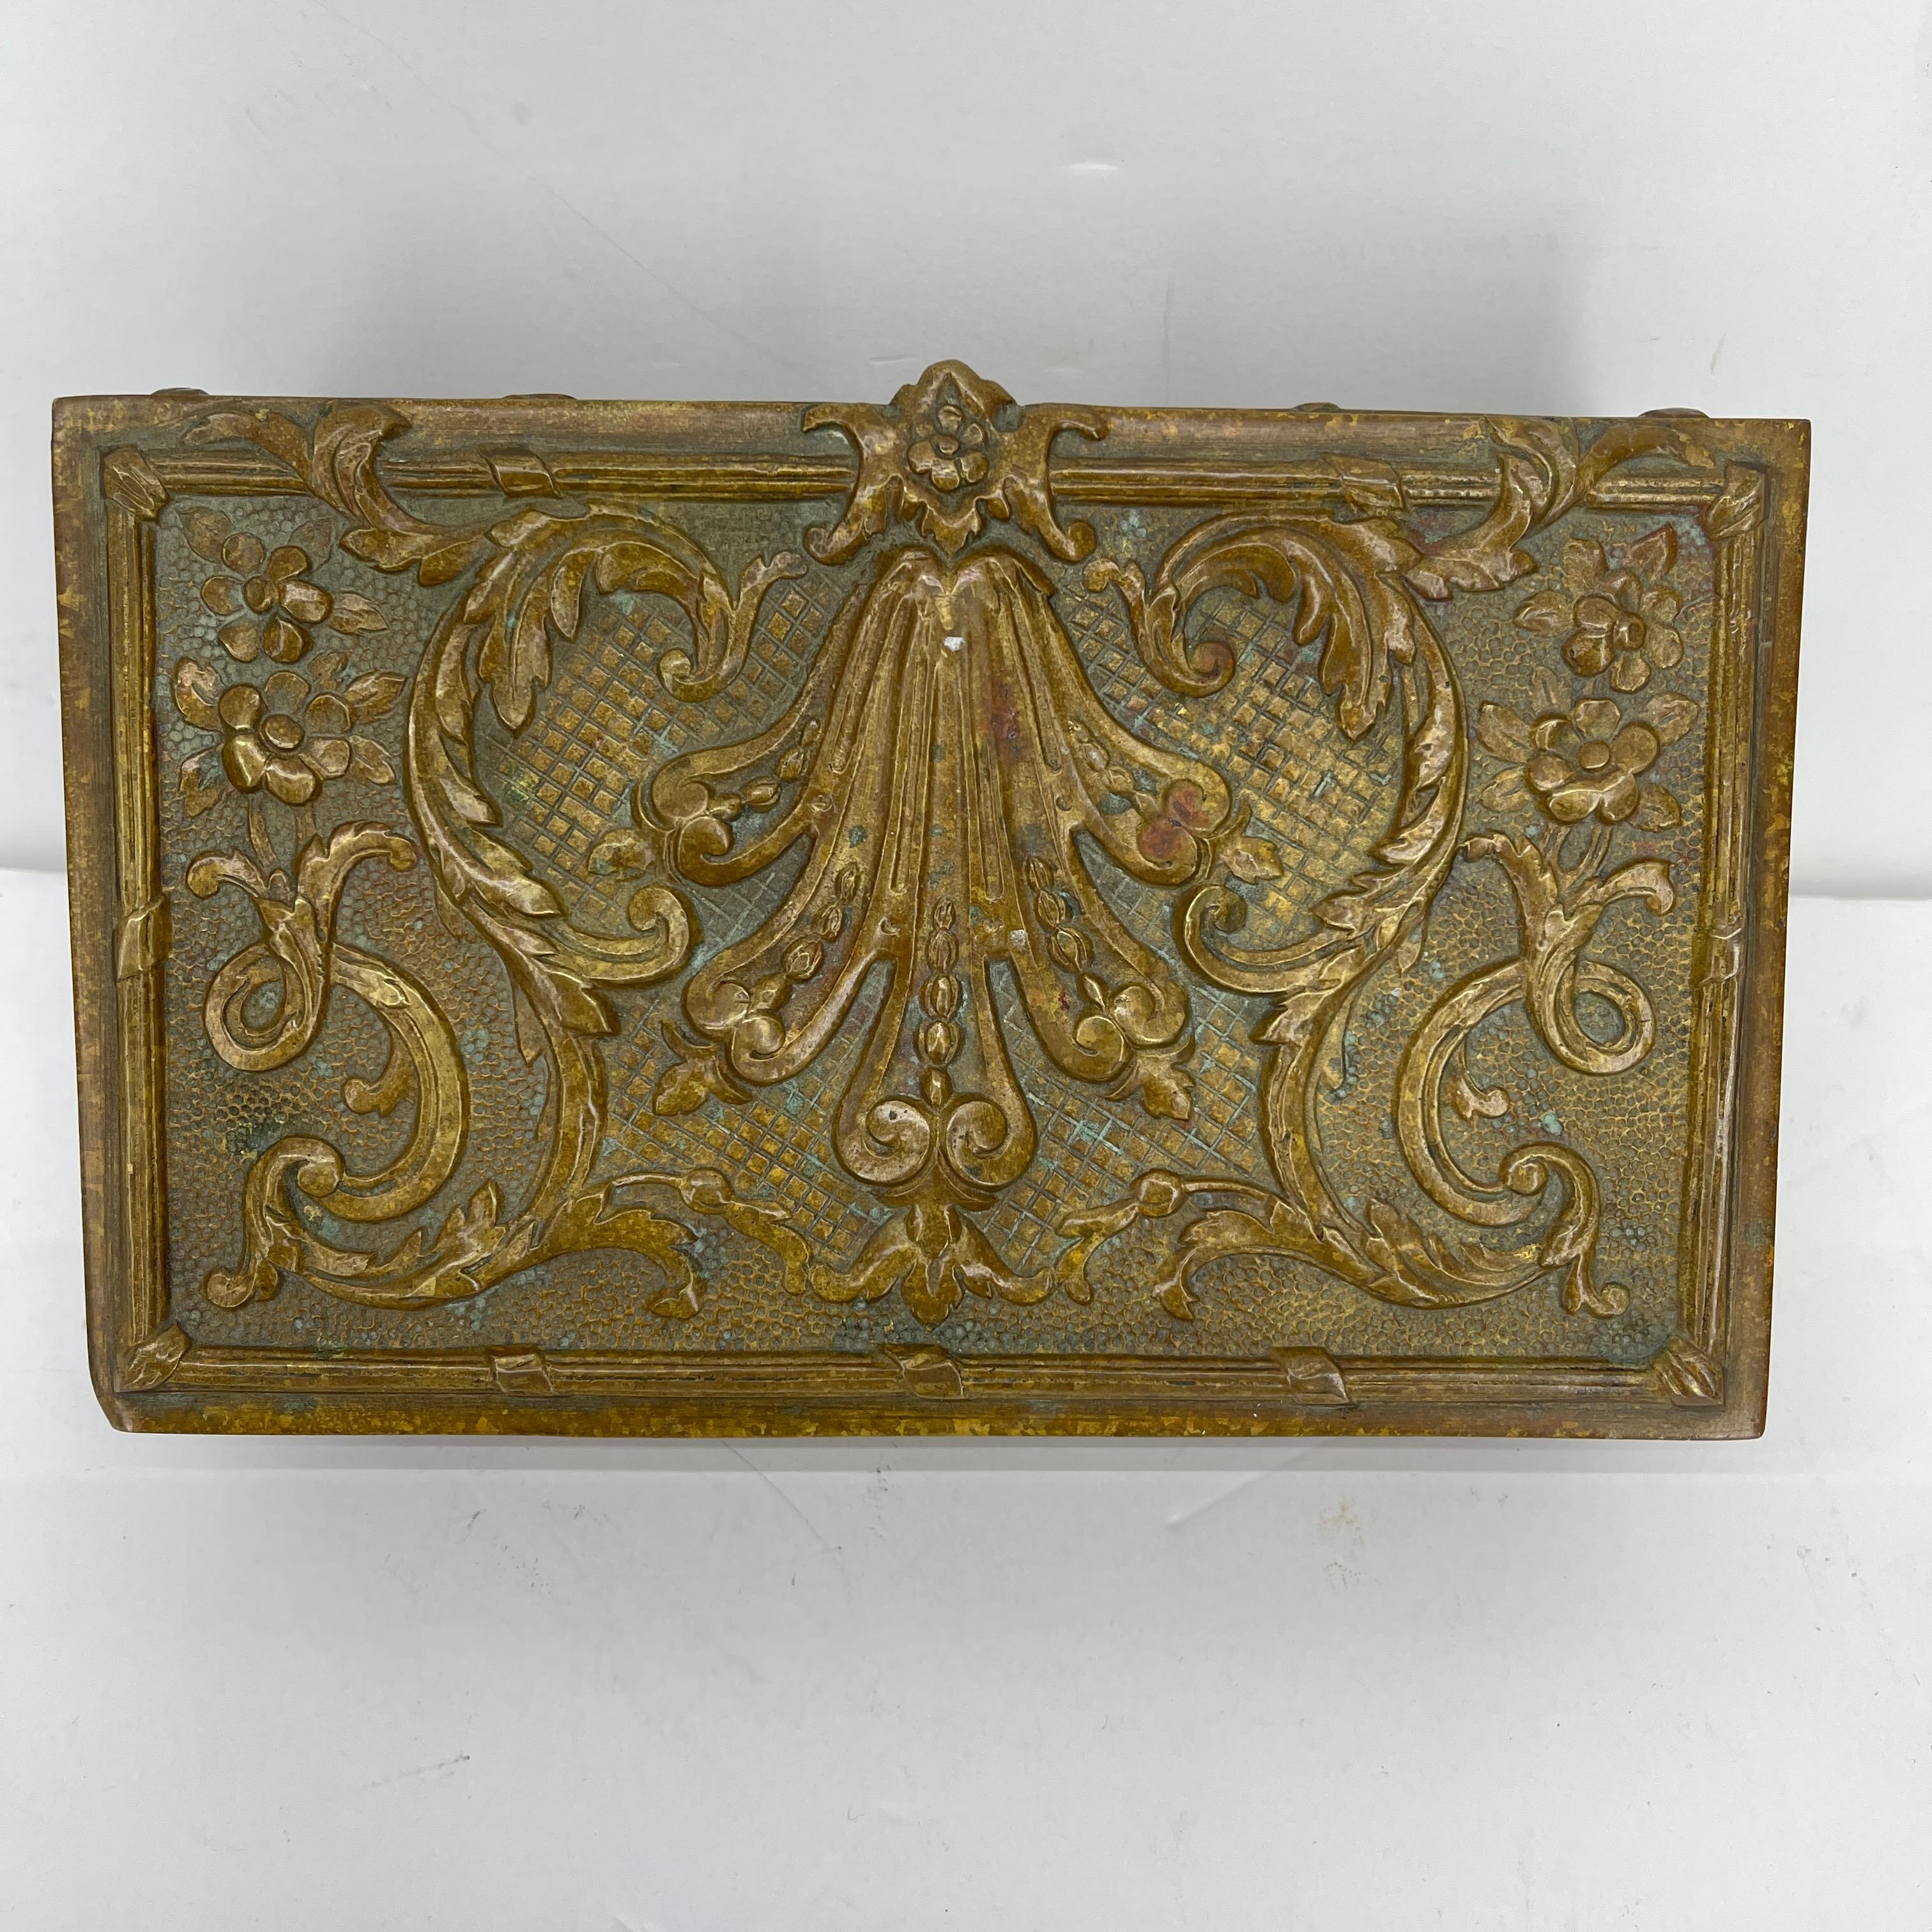 Hand-Crafted Rectangular Bronze Vanity Jewelry Box, Belgium, circa 1920-1930's